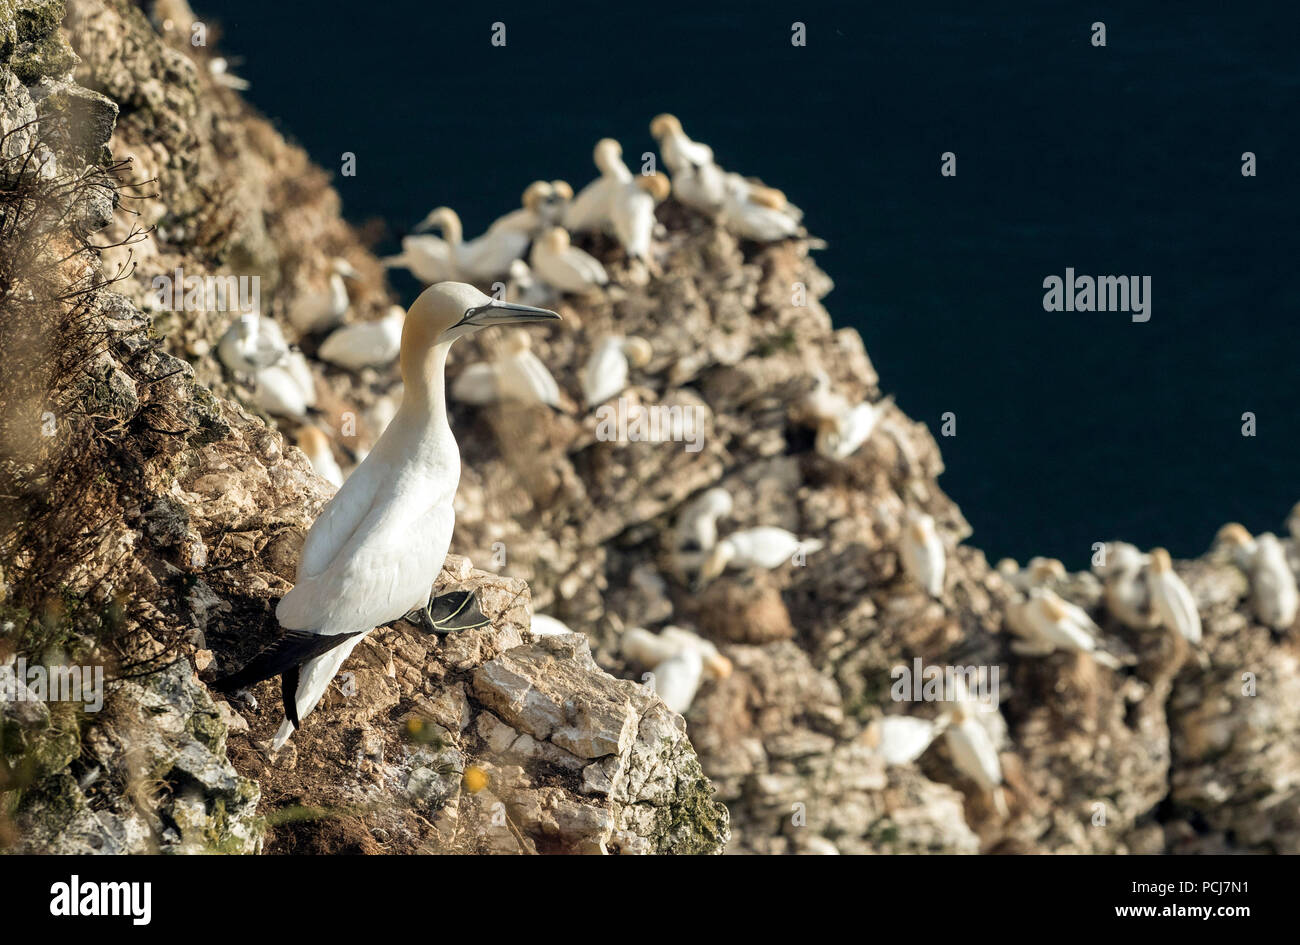 Le sule nidificano nell'RSPB riserva naturale a Bempton Cliffs nello Yorkshire, come oltre 250.000 uccelli marini gregge a Chalk cliffs per trovare un compagno e allevare i loro piccoli. Foto Stock